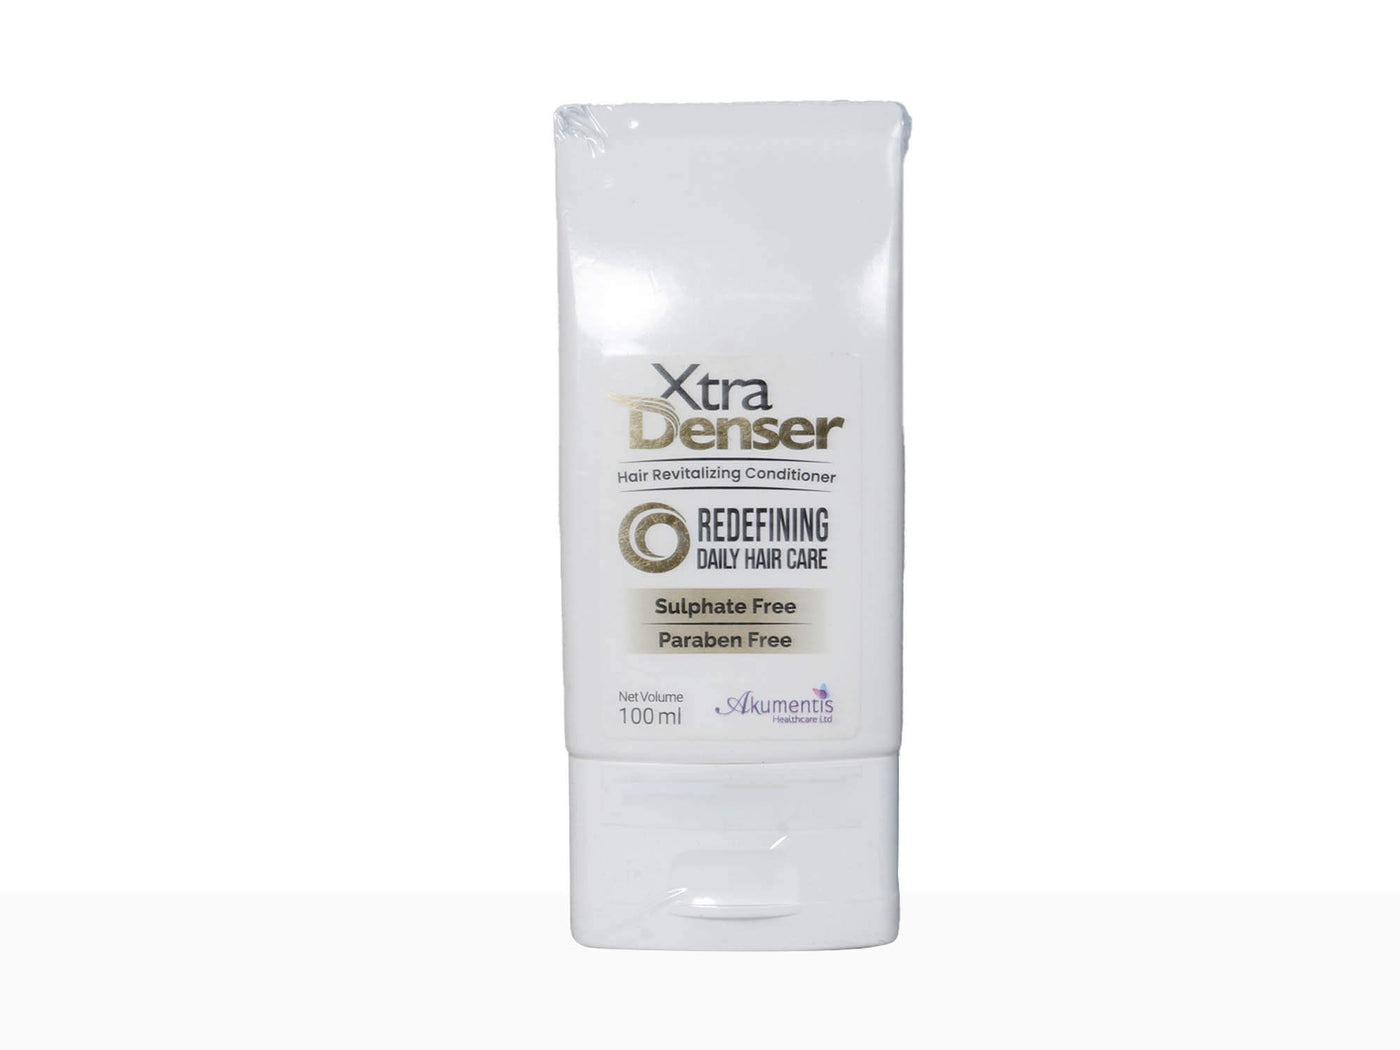 Xtra Denser Hair Revitalizing Conditioner - Clinikally